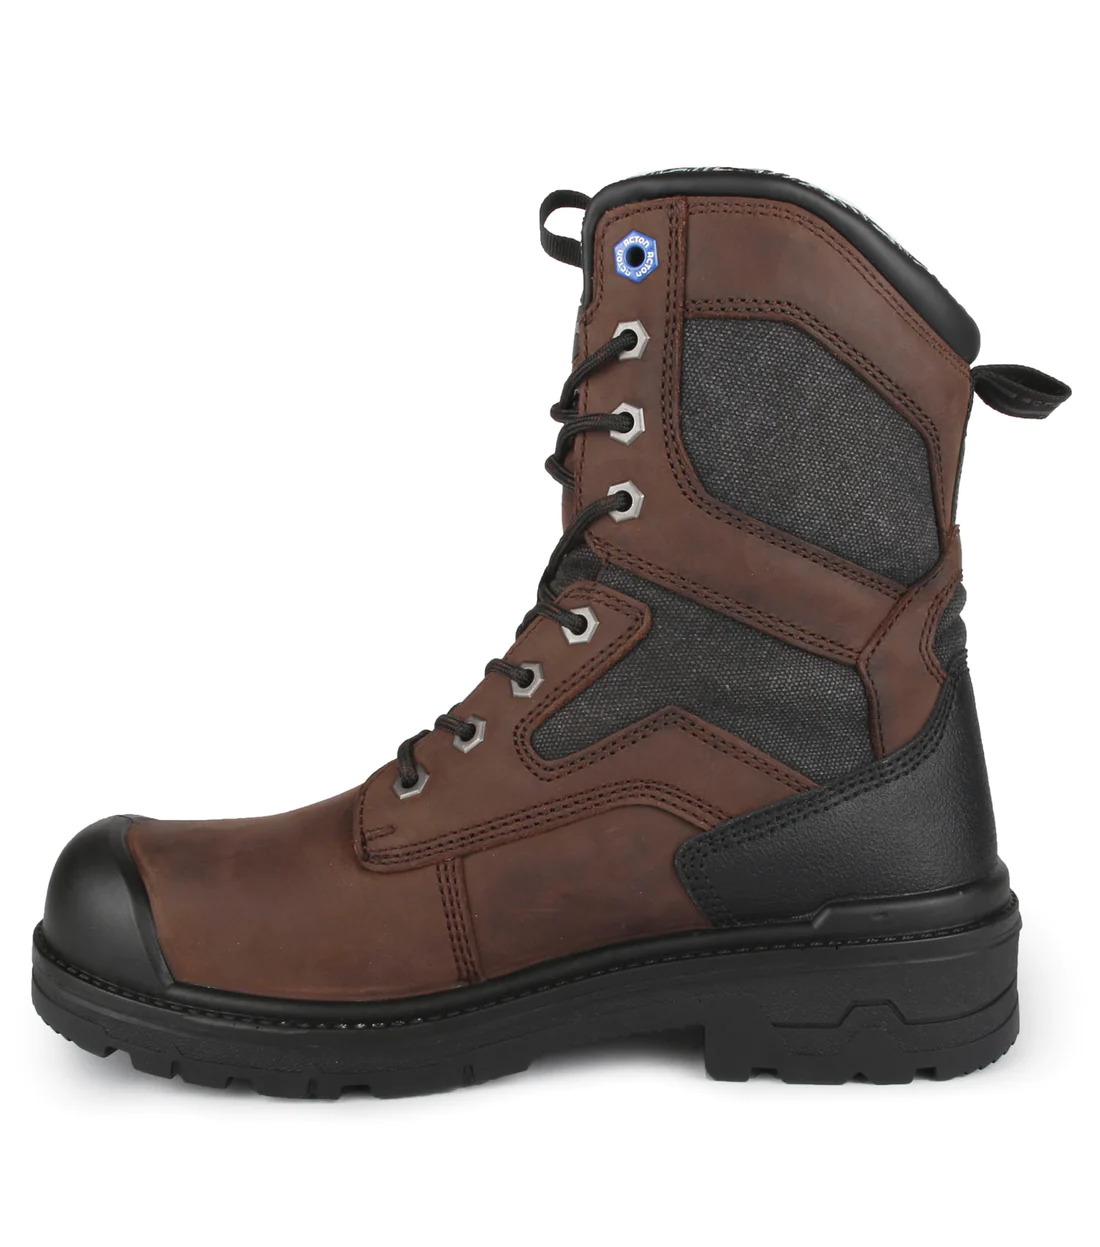 Acton – Boots – #9074-12 – Left